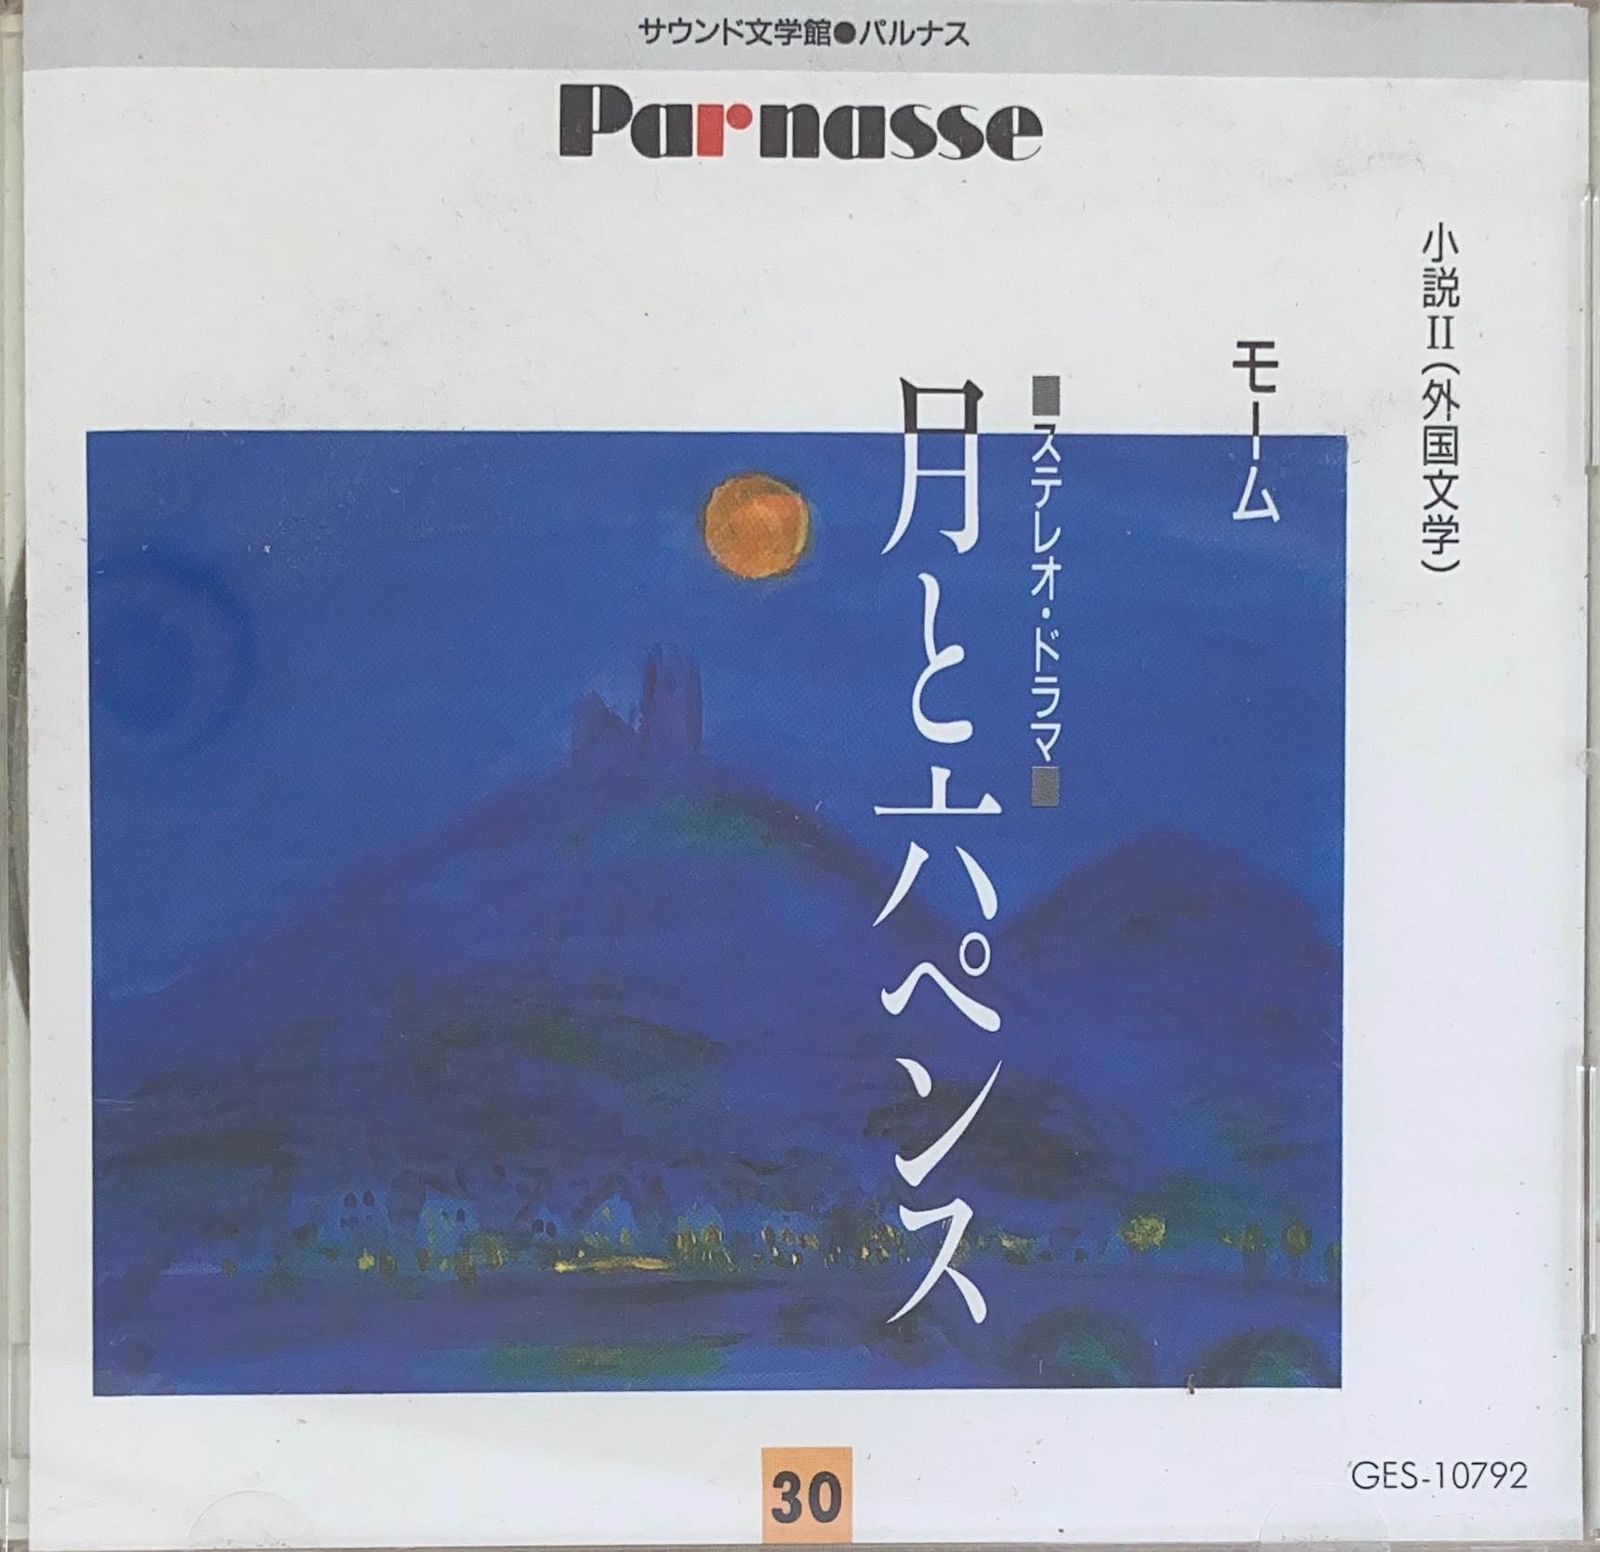 サウンド文学館 パルナス Ⅱ (30) モーム『月と六ペンス』CD_サウンド文学館パルナス2